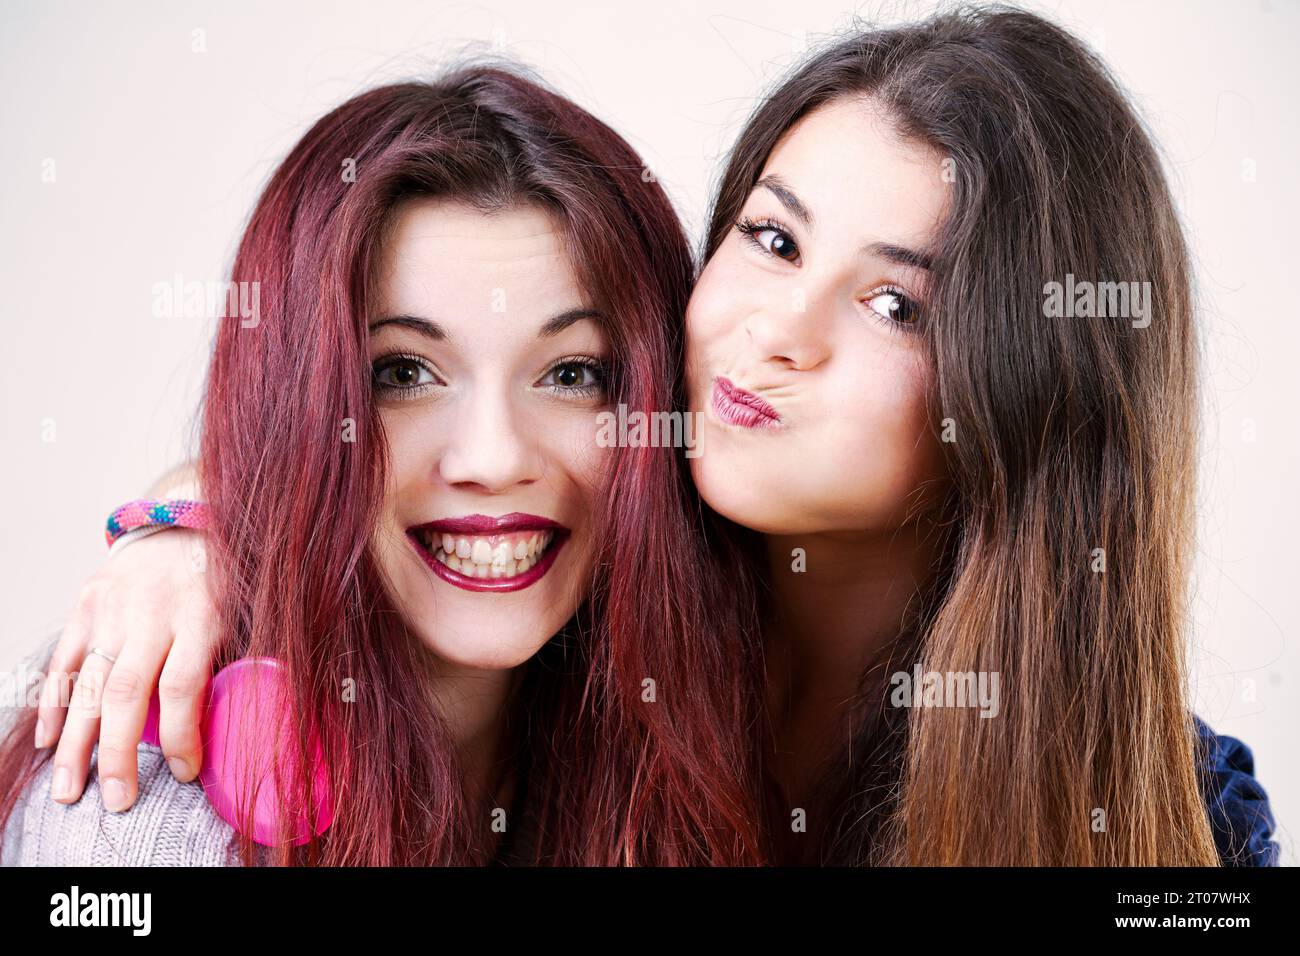 Porträt zweier verspielter junger Frauen, möglicherweise Schwestern oder Freunde, die lustige Gesichter machen. Mit gut geschminktem Make-up und langen Haaren sind sie auf die Dummheit vorbereitet Stockfoto